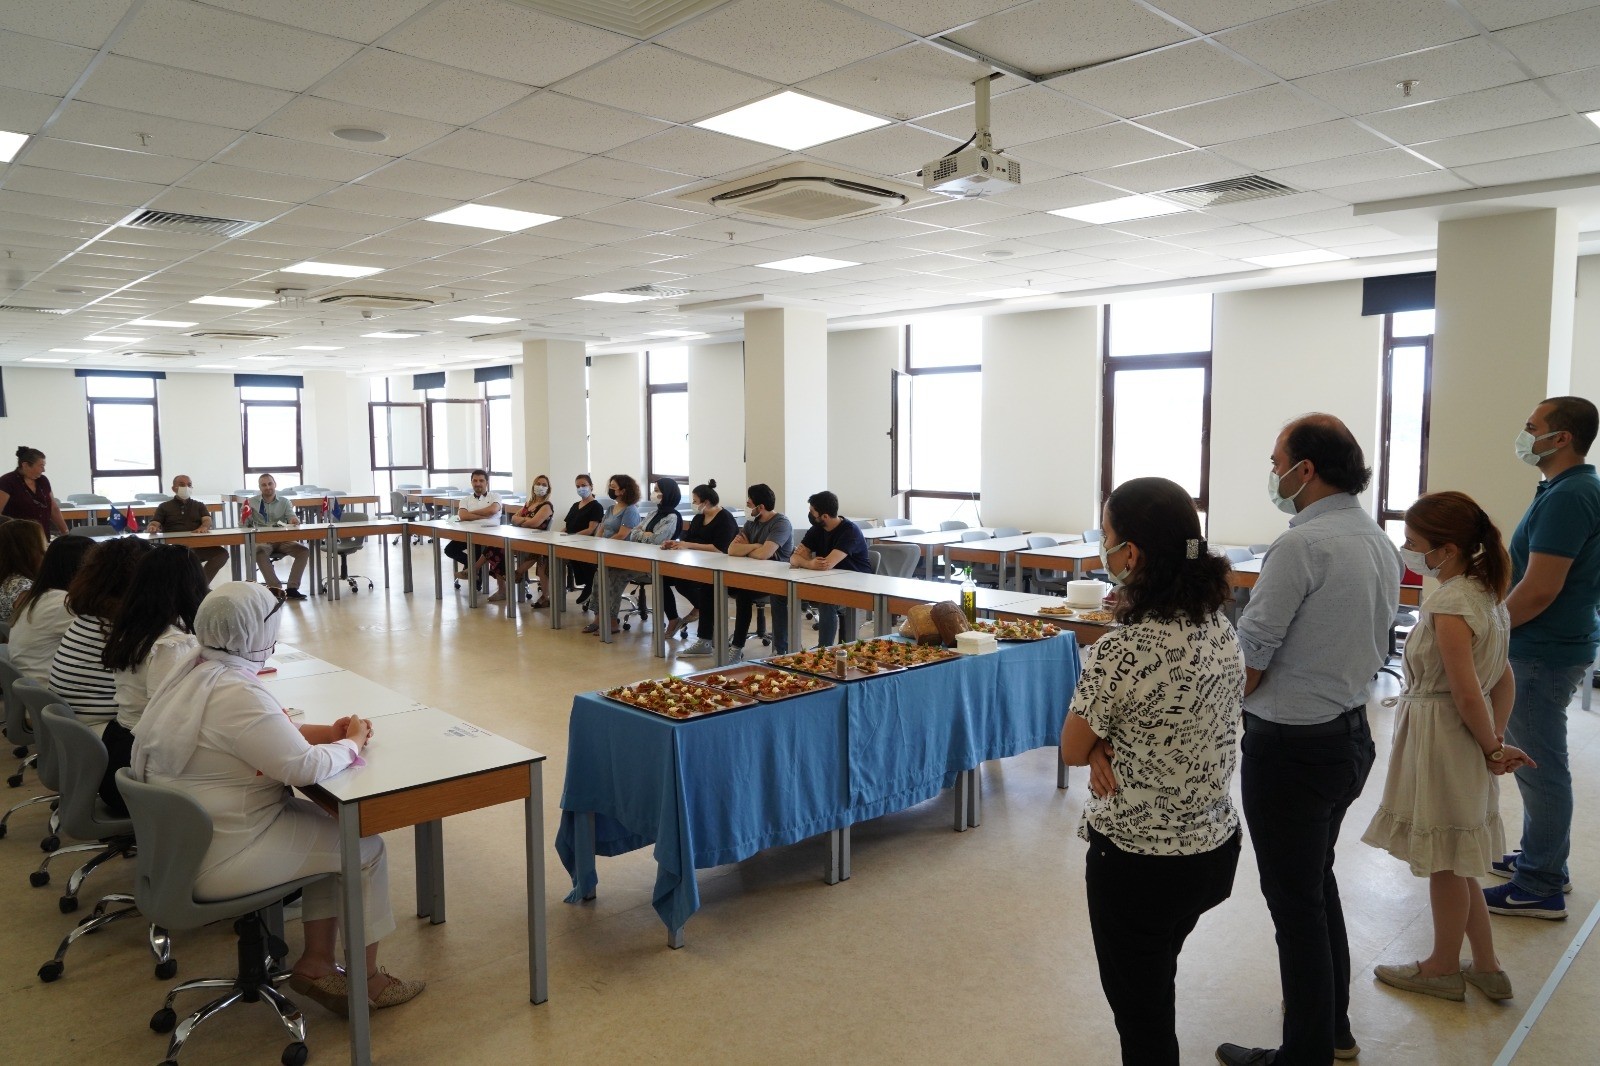 HKÜ’nün yeni açılan “Gastronomi ve Mutfak Sanatları Bölümü”nün tanıtım toplantısında lezzet geçidi